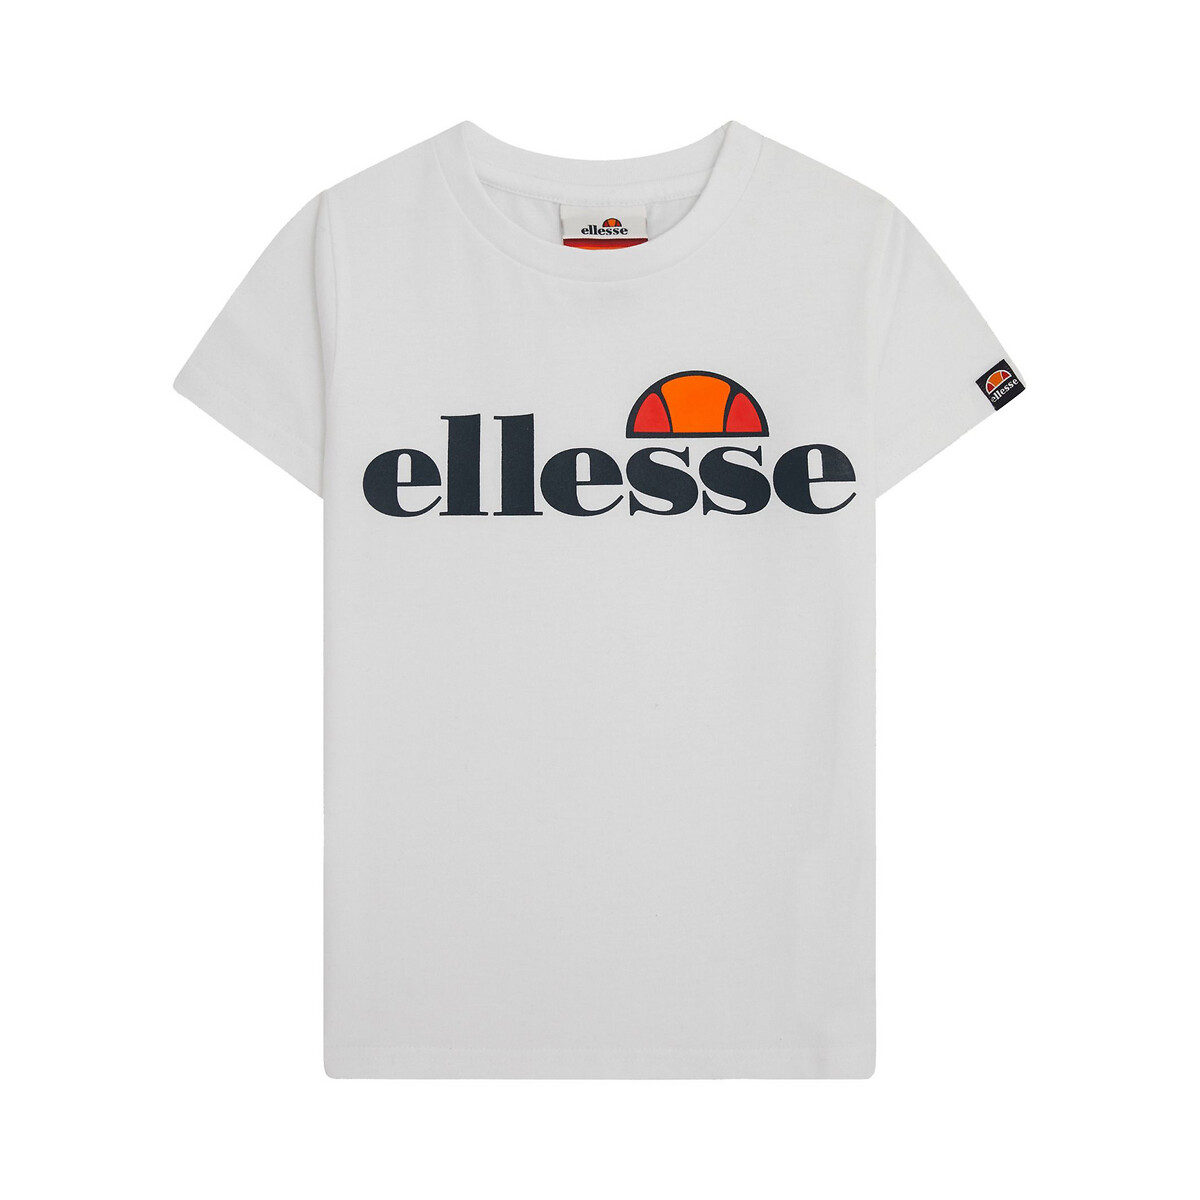 Cotton t-shirt, 8-14 years Ellesse La Redoute